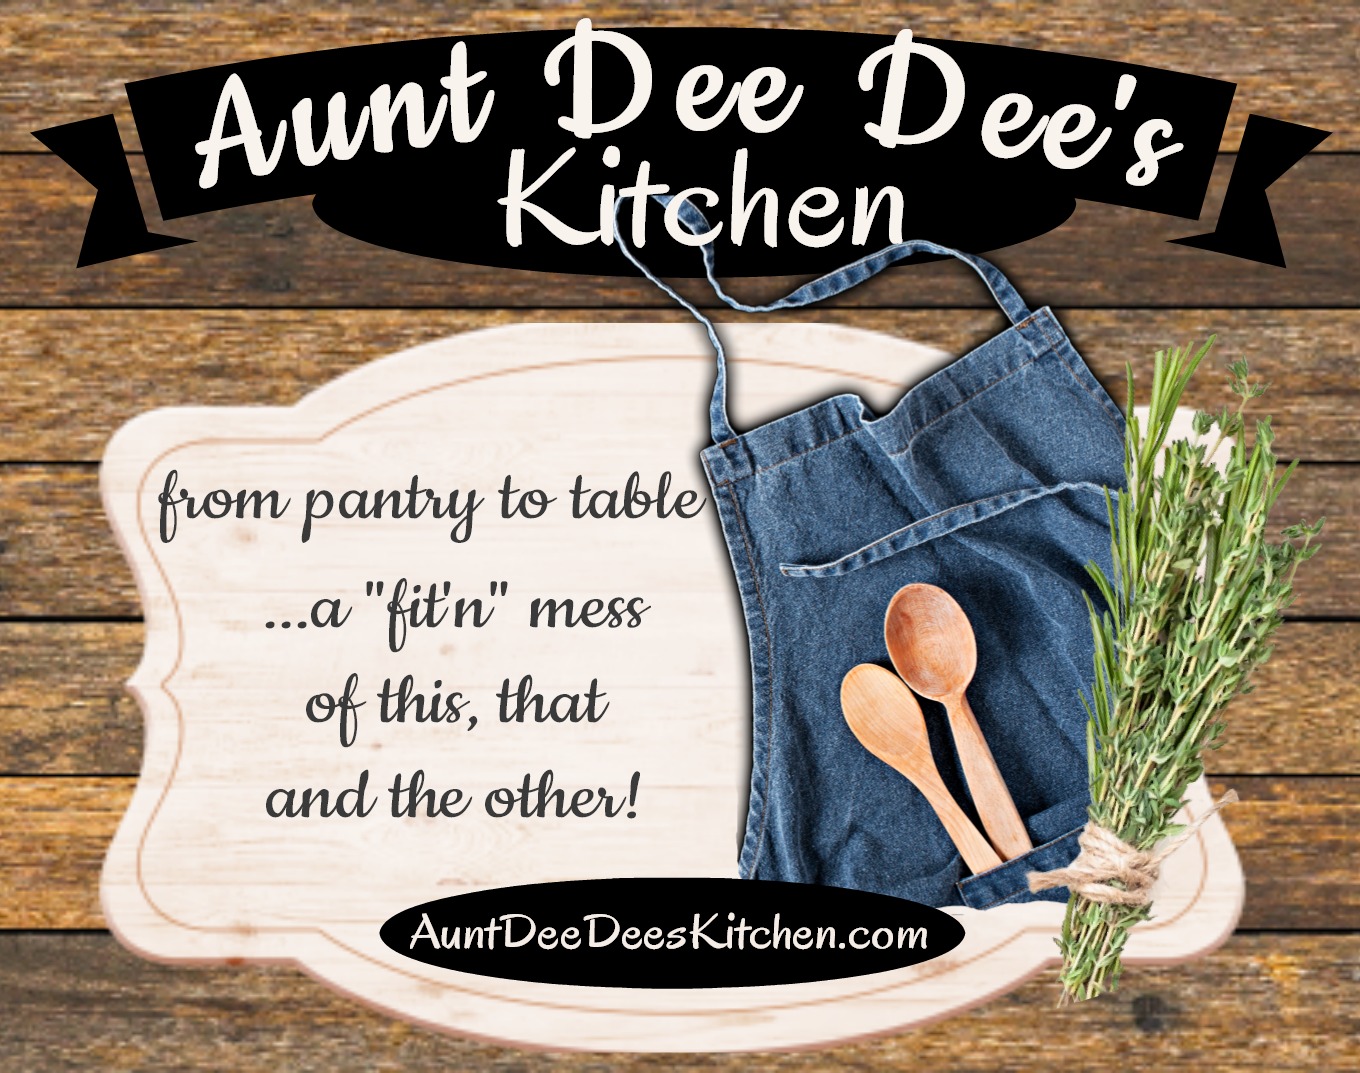 Aunt Dee Dee's Kitchen online store